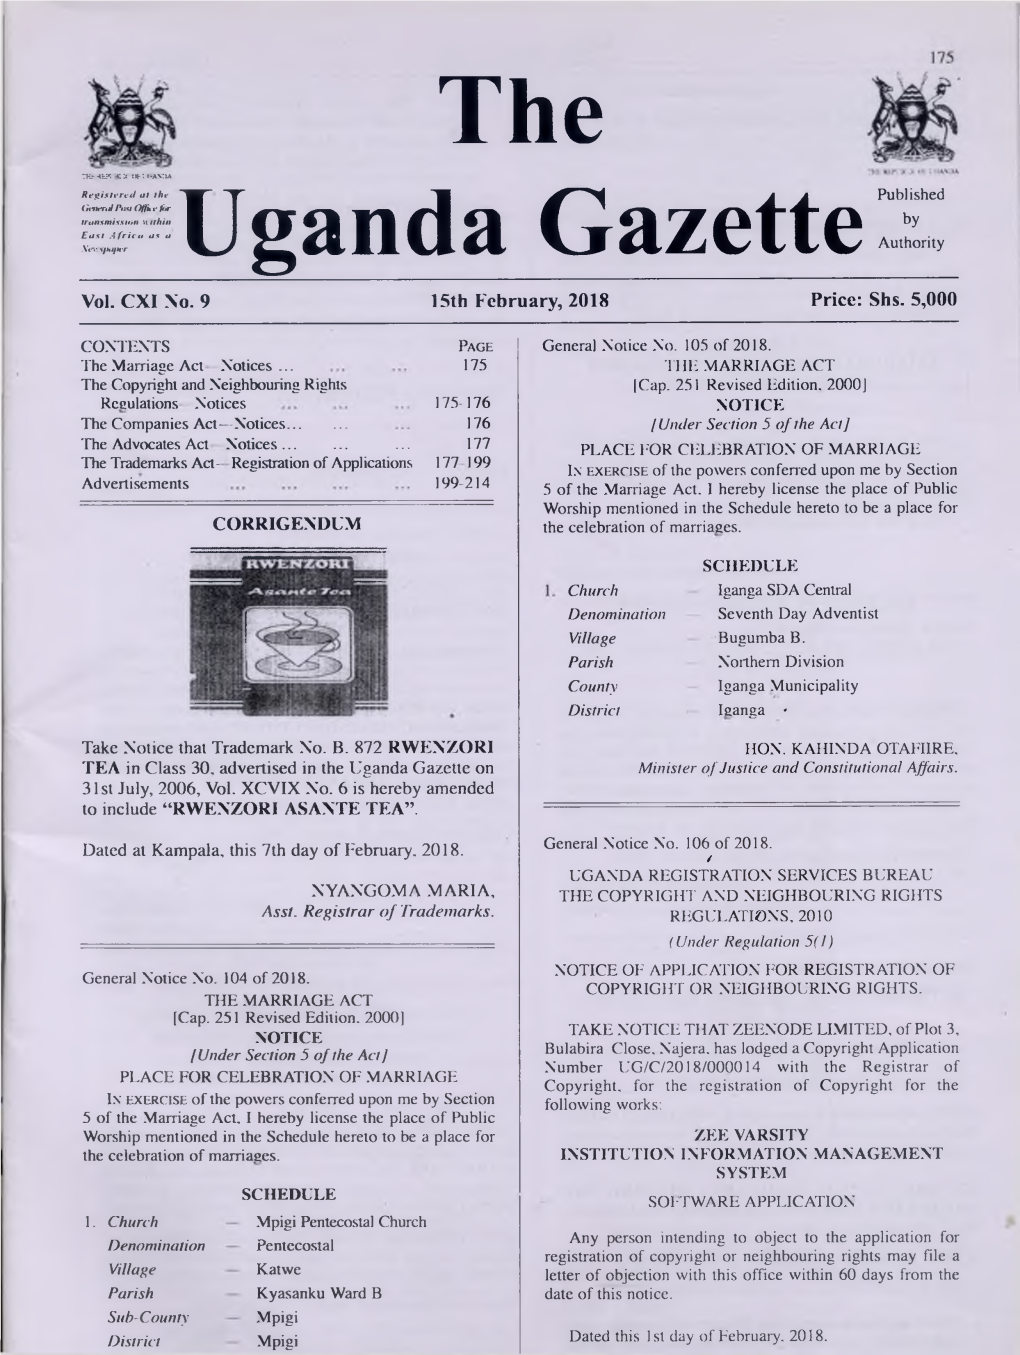 The Uganda Gazettepublished